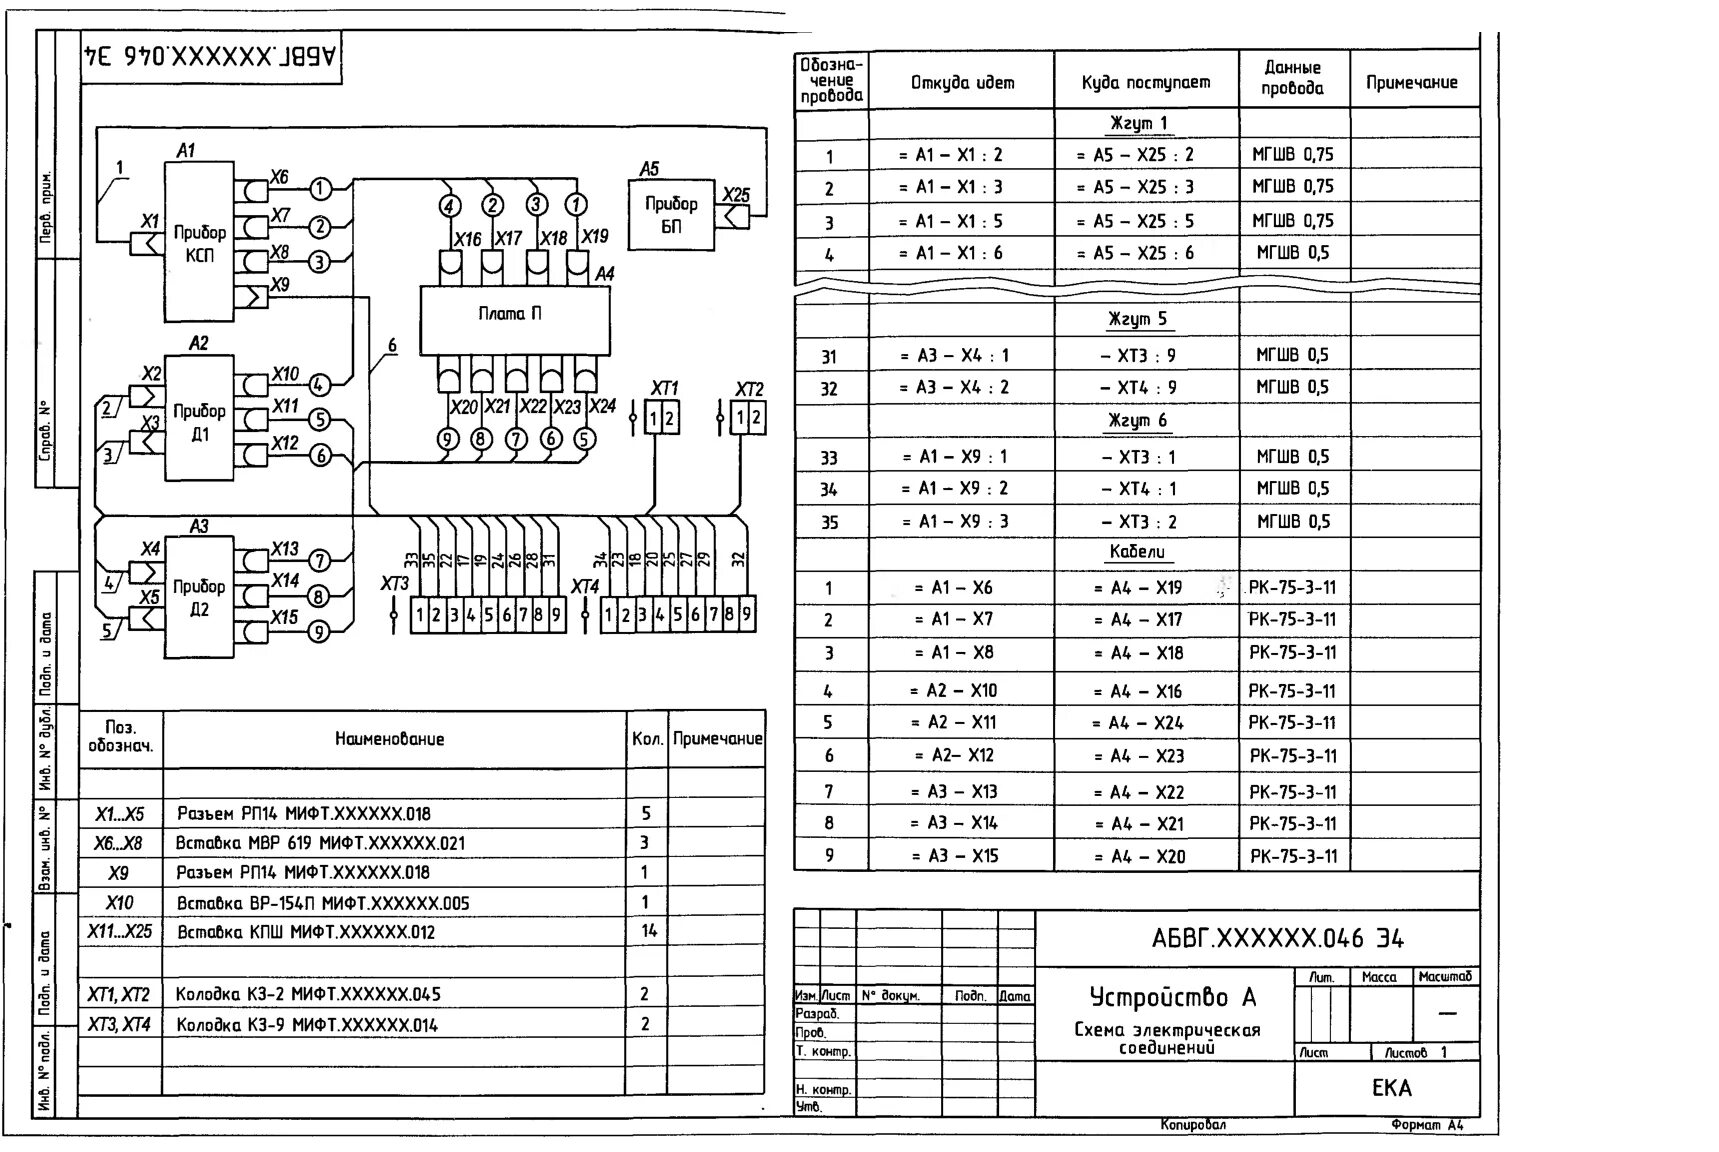 Э5 схема электрическая подключения. Схема соединений (монтажная) (э4). Схема электрическая кабельных соединений. Схема электрическая монтажная э4.